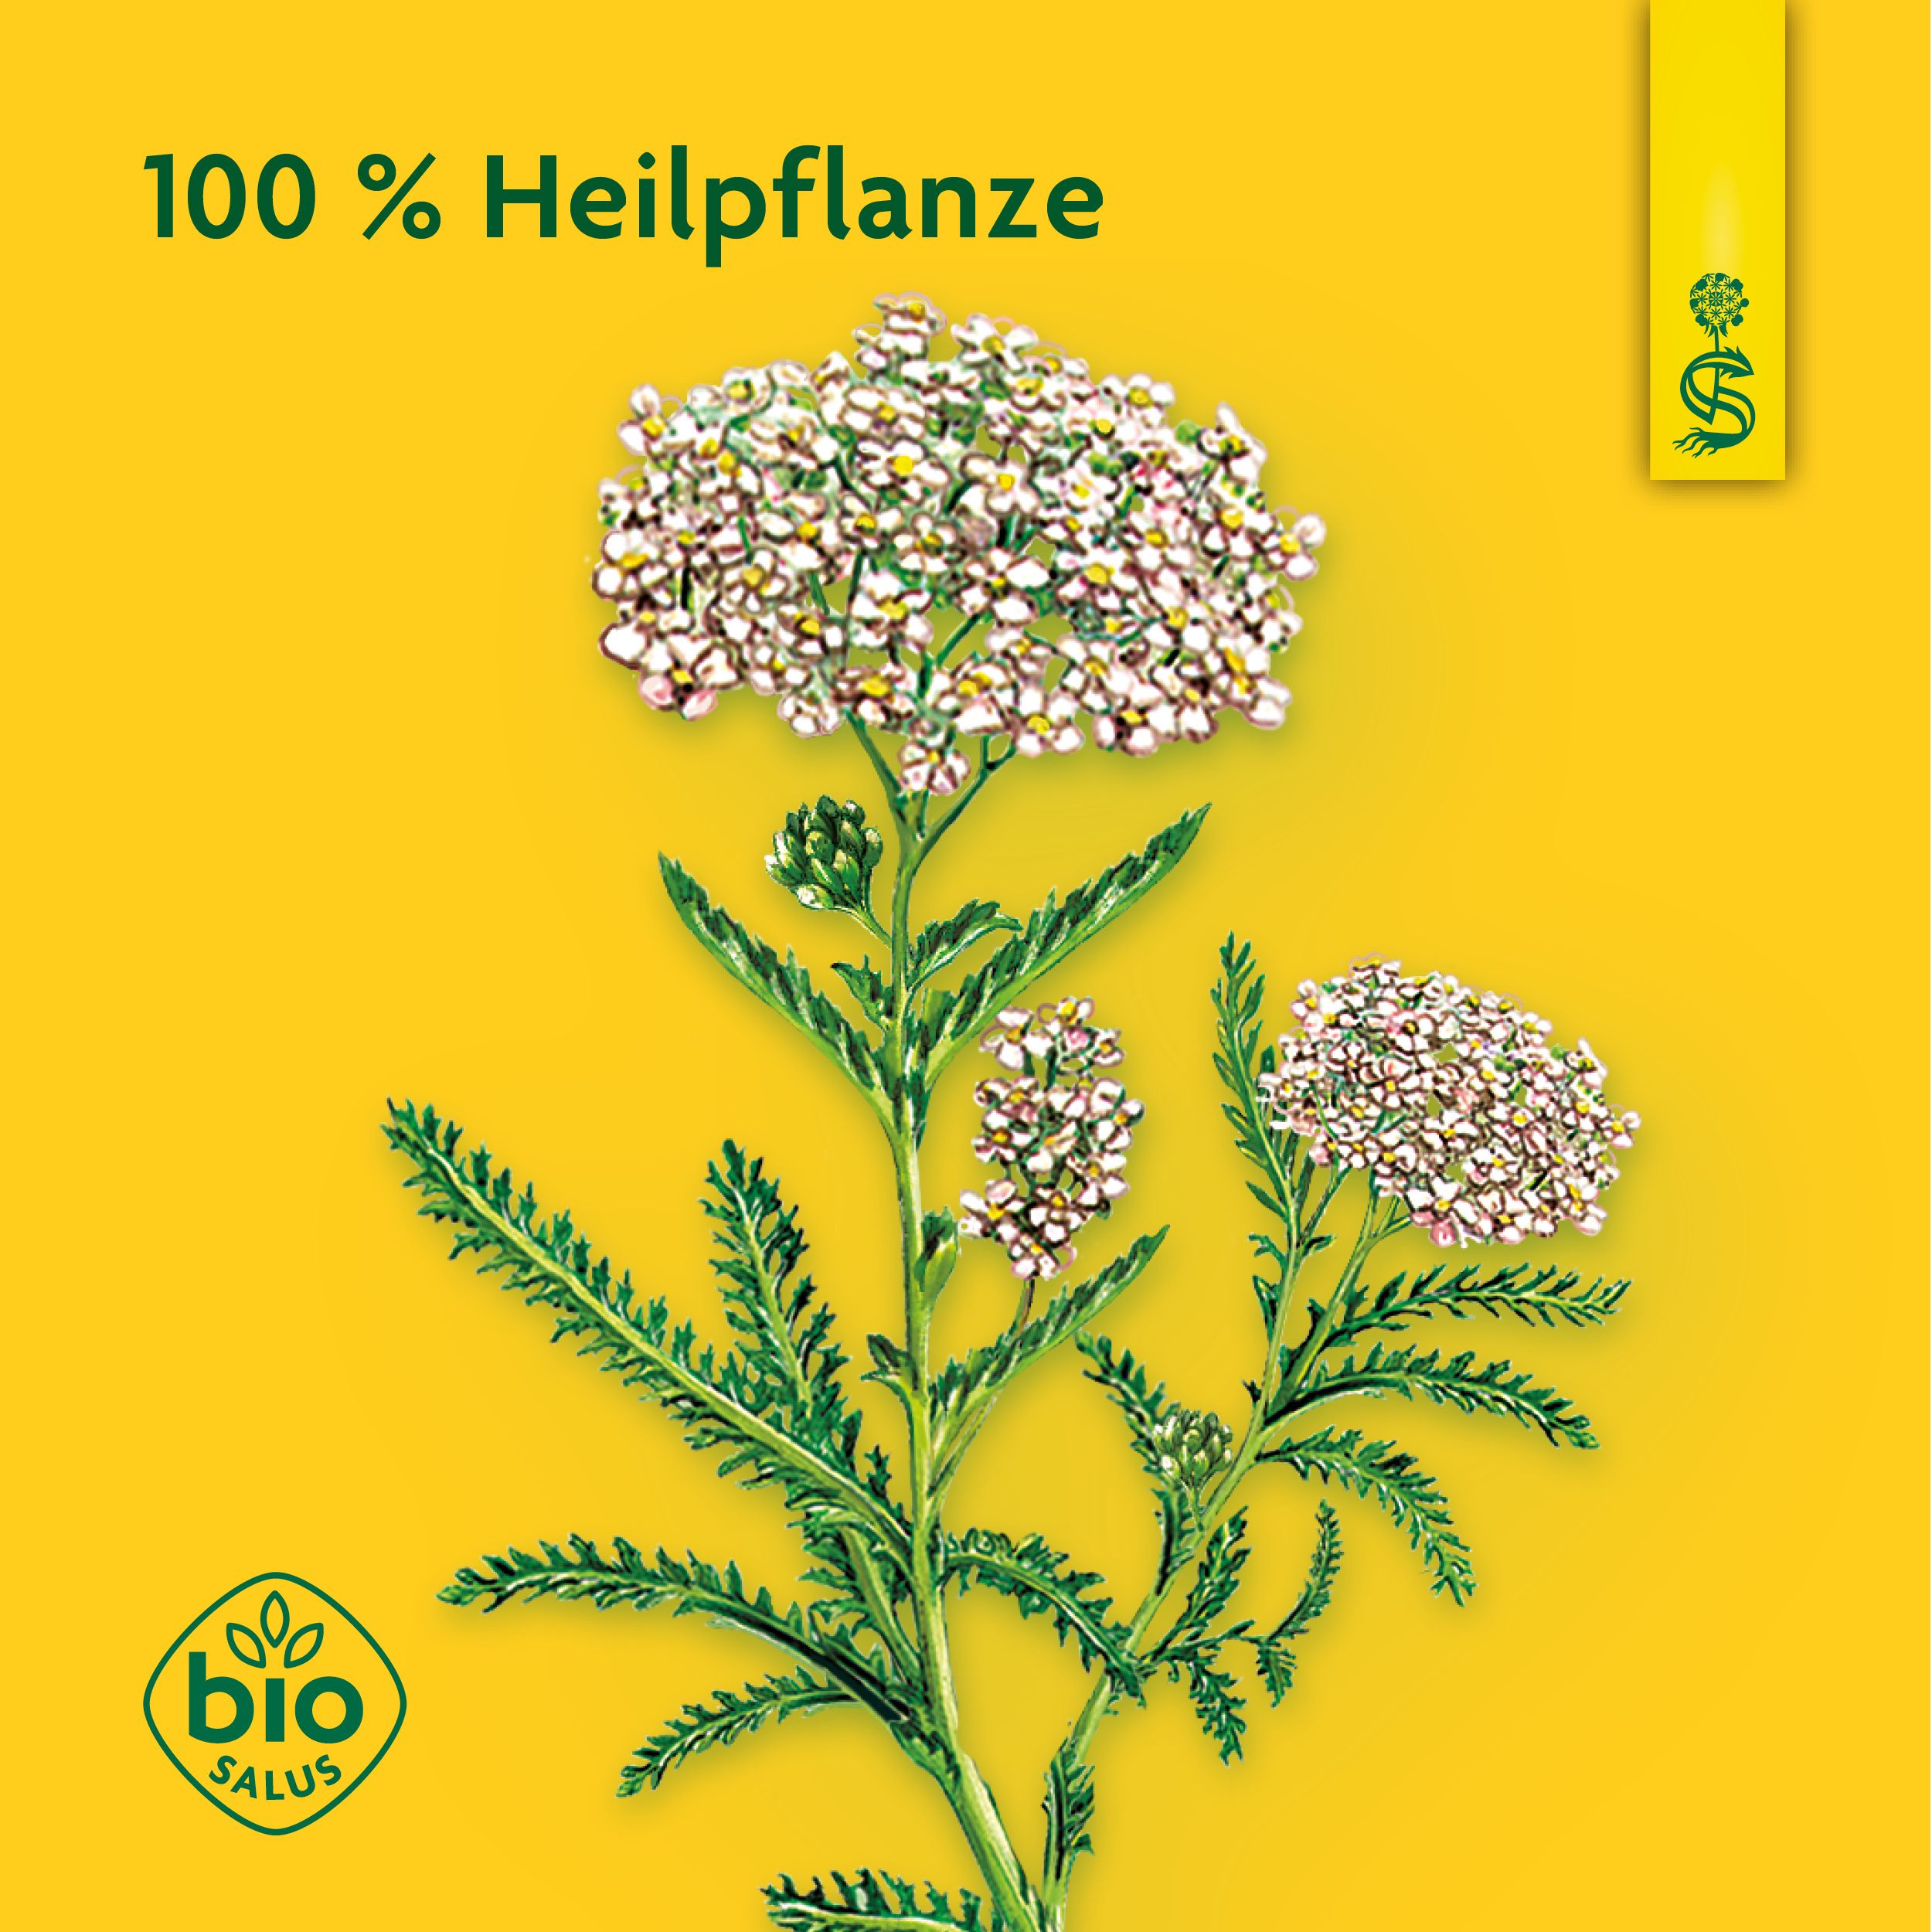 Schoenenberger® naturreiner Heilpflanzensaft Schafgarbe